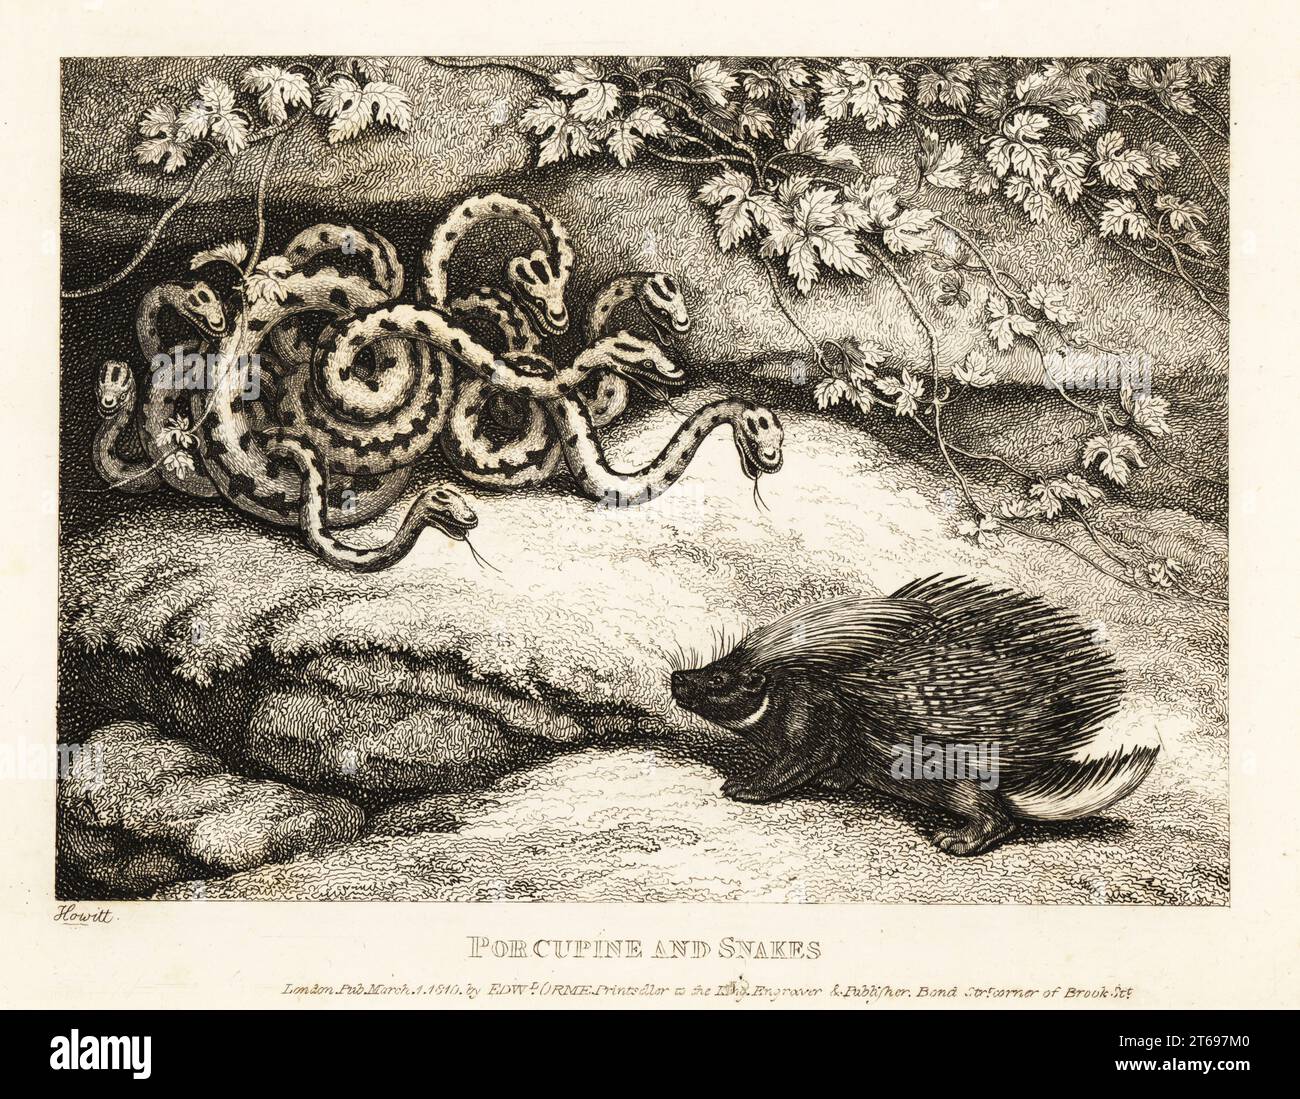 Ein Stachelschwein stimmt zu, eine Höhle mit einem Schlangennest zu teilen, aber seine scharfen Stacheln treiben sie hinaus. Stachelschweine und Schlangen. Illustration einer Fabel des griechischen Autors Aesop. Kupferstichradierung gezeichnet und aus dem Leben von Samuel Howitt aus seinem eigenen A New Work of Animals, hauptsächlich entworfen aus den Fabeln von Aesop, Gay and Phaedrus, Edward Orme, London, 1811. Stockfoto